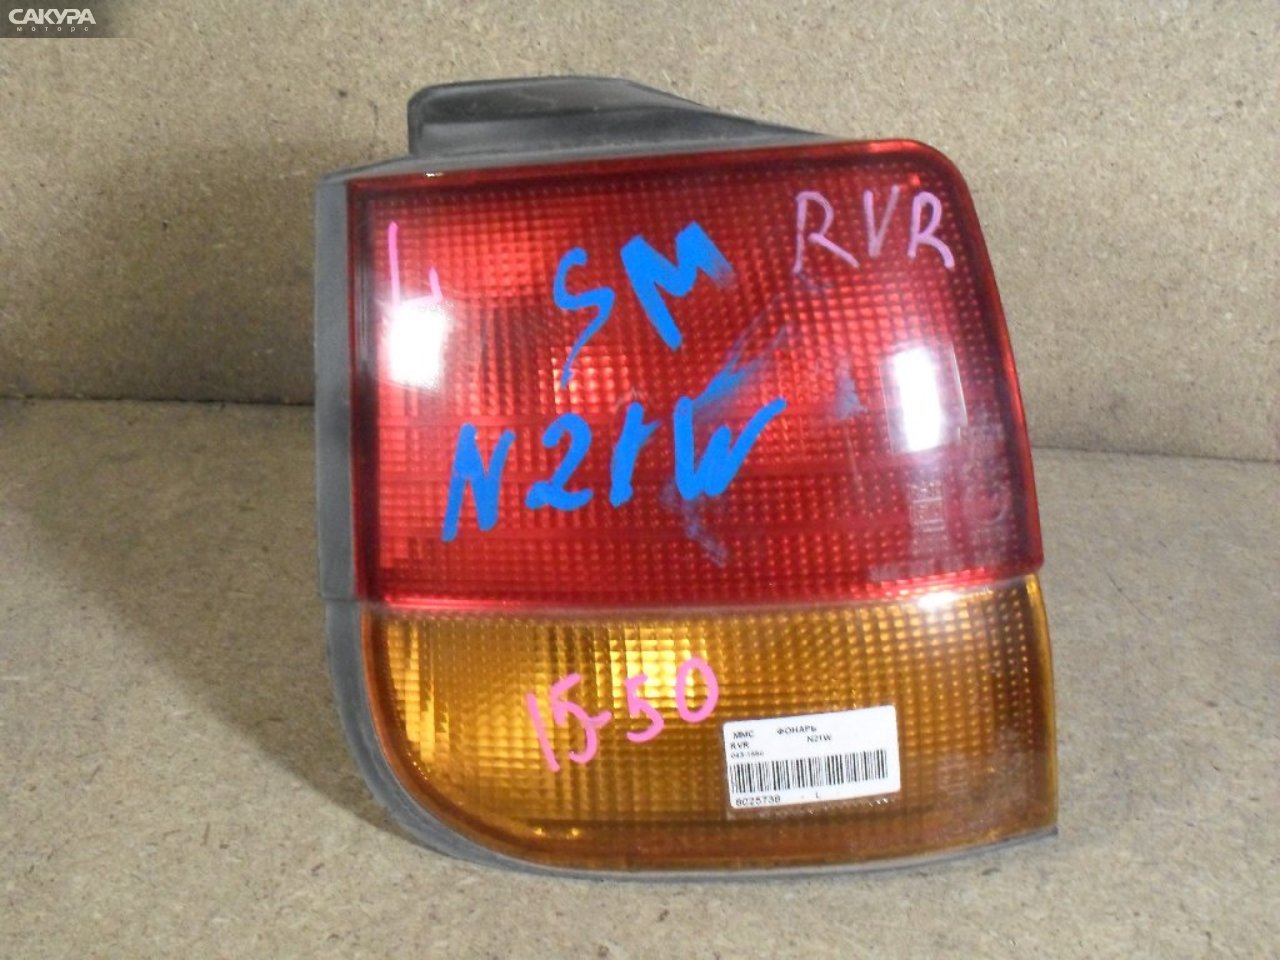 Фонарь стоп-сигнала левый Mitsubishi RVR N21W 043-1550: купить в Сакура Абакан.